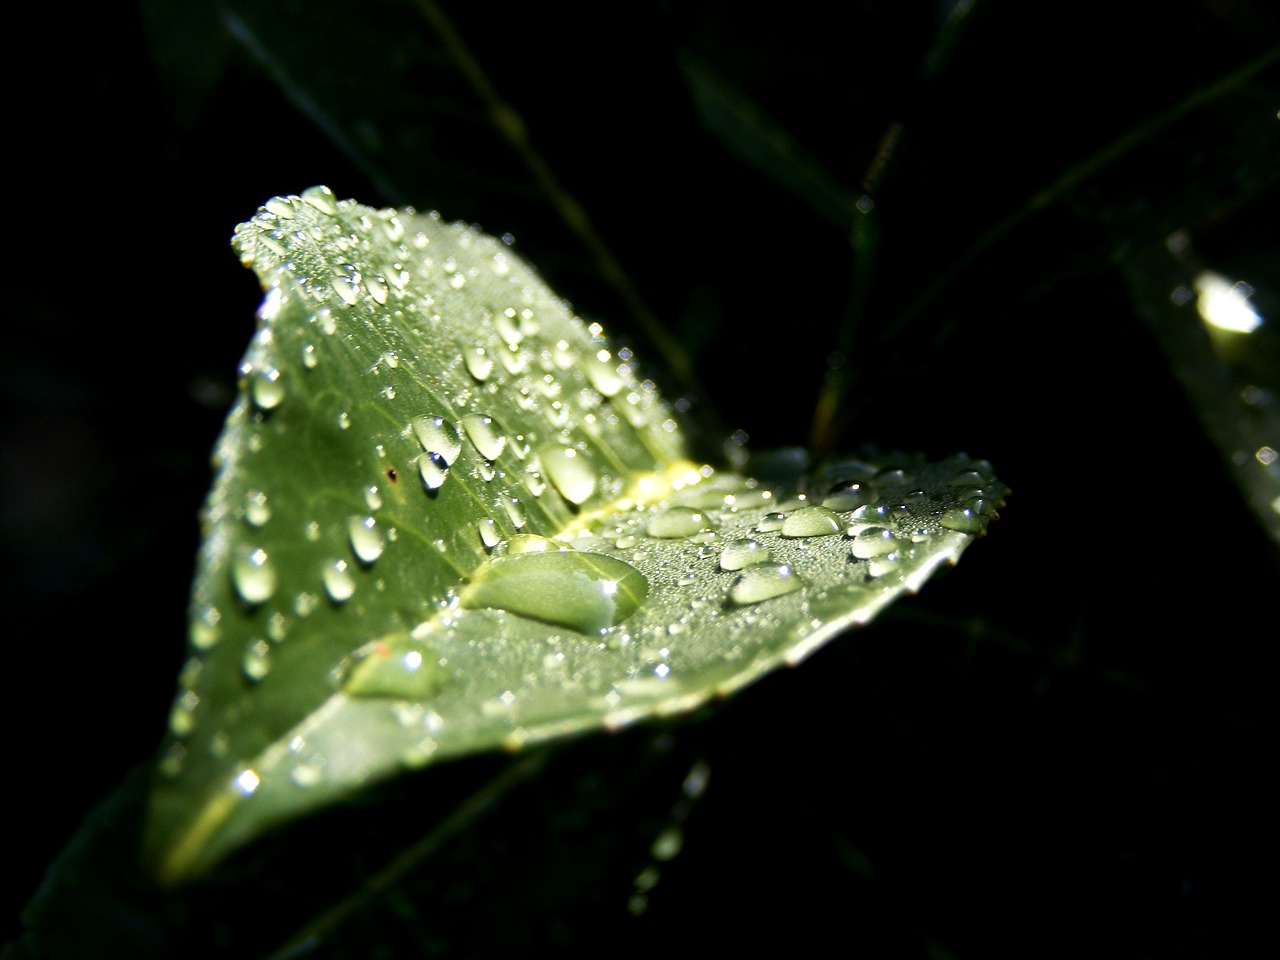 leaf dew drops free photo